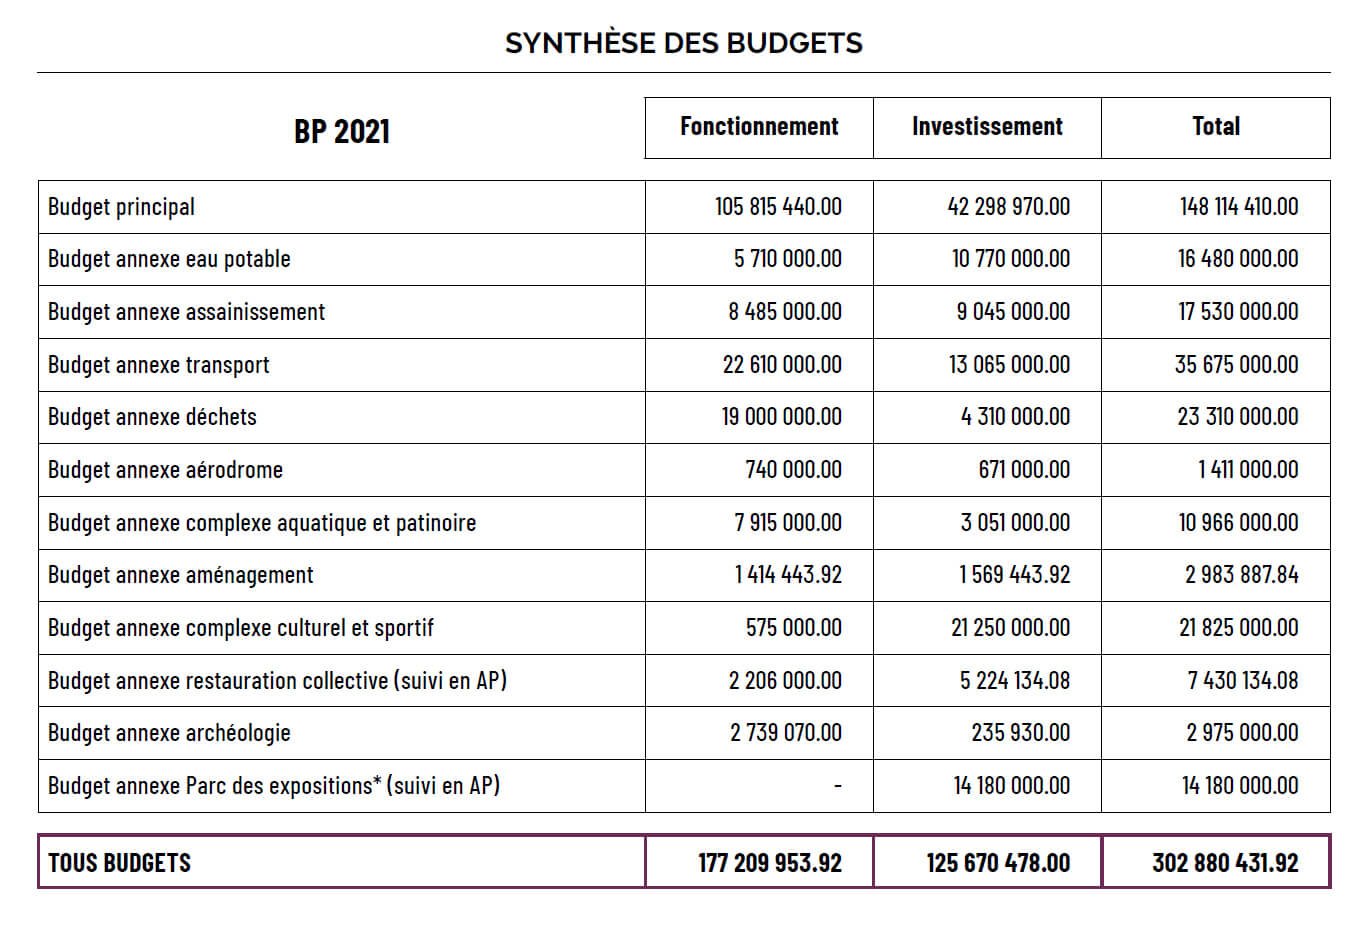 Synthèse des budgets 2021 de Chartres métropole